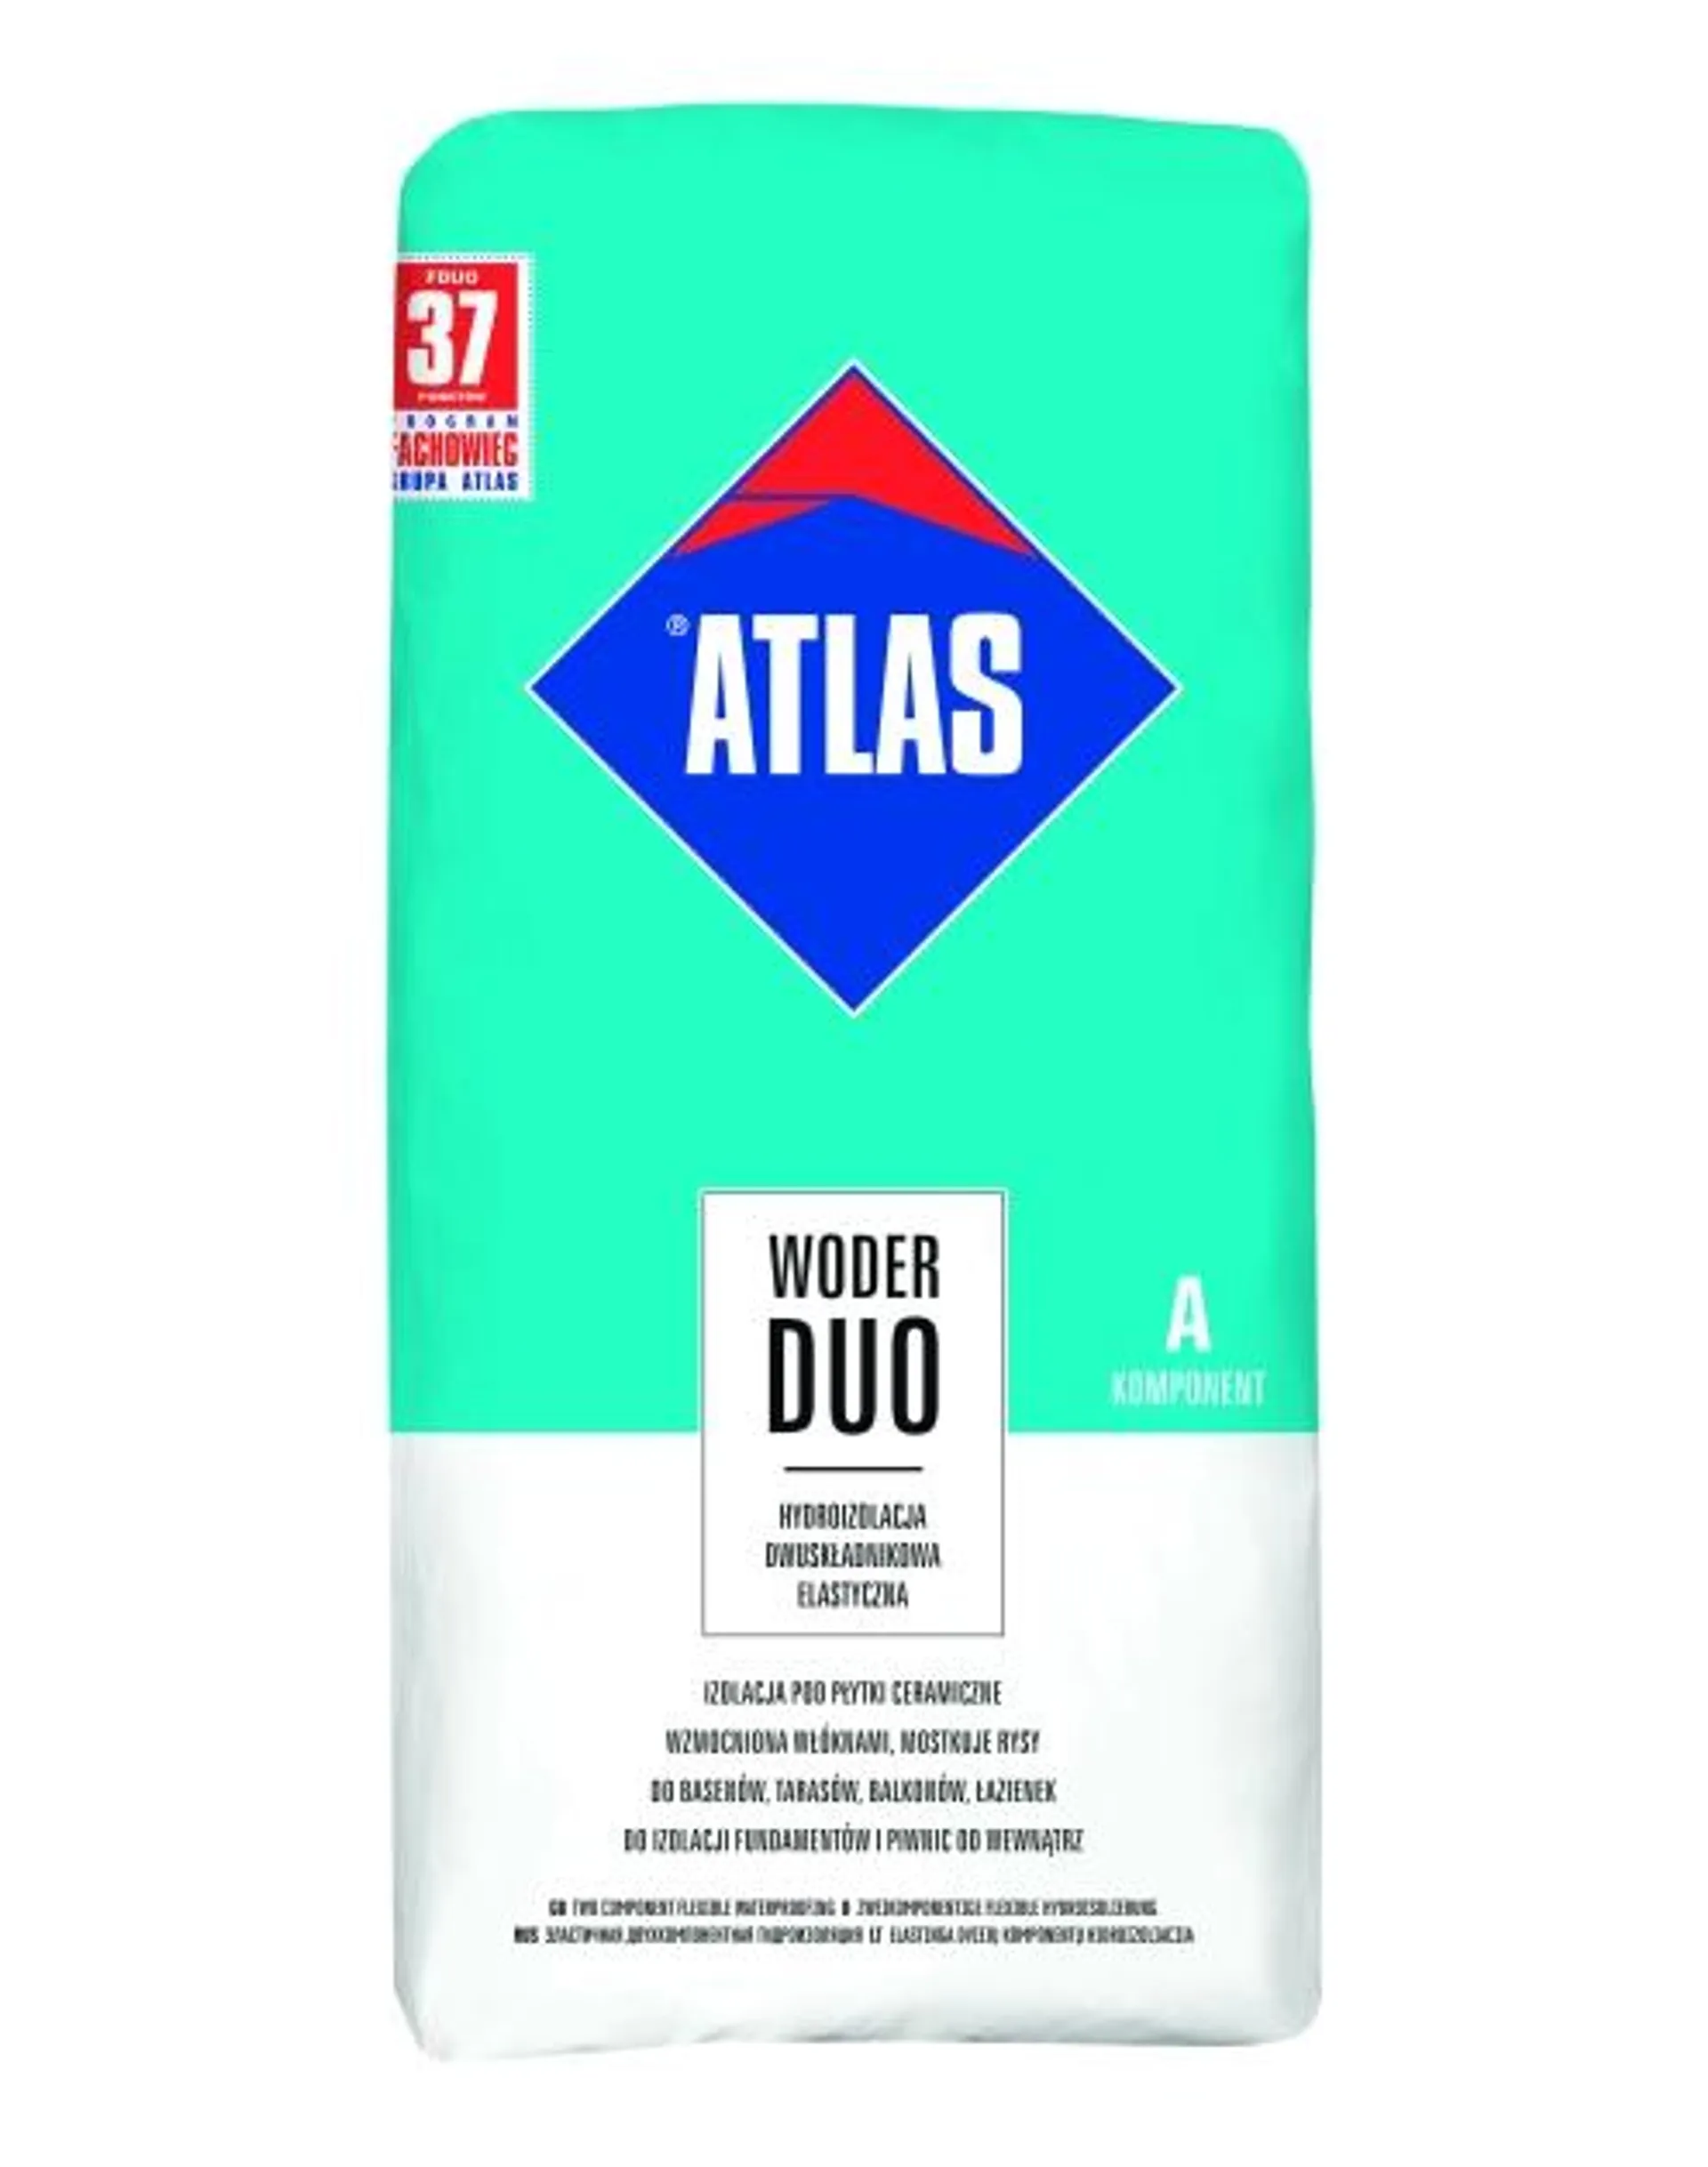 Hydroizolacja dwuskładnikowa błyskawiczna Woder Duo 24 kg sucha ATLAS